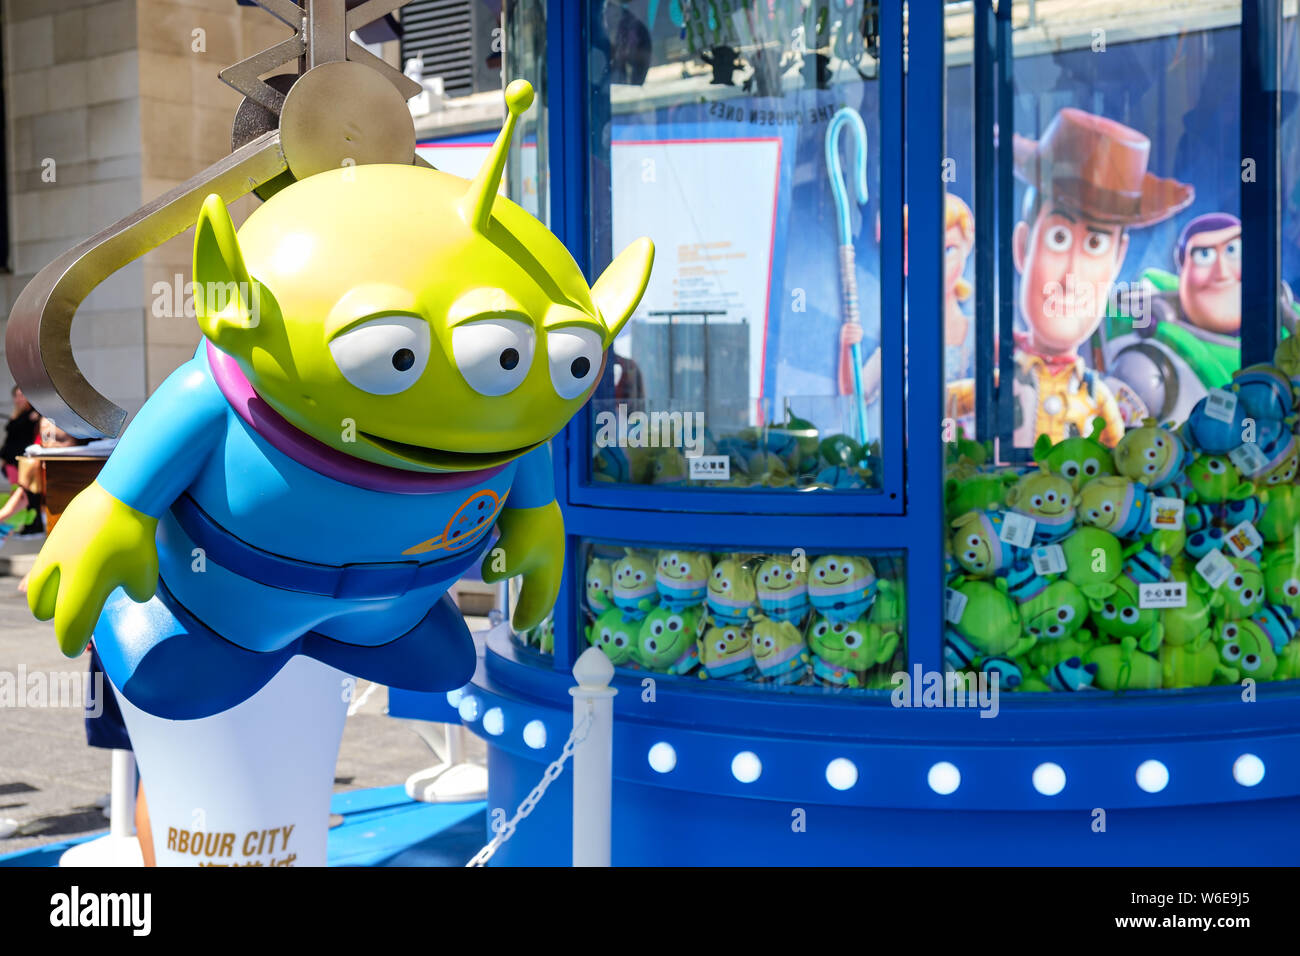 Una replica del piccolo uomo verde / Squeeze Toy stranieri durante il carnevale.Toy Story 4 è celebrato con un carnevale a tema di diversi giochi e sfide al Porto di Hong Kong City. Foto Stock